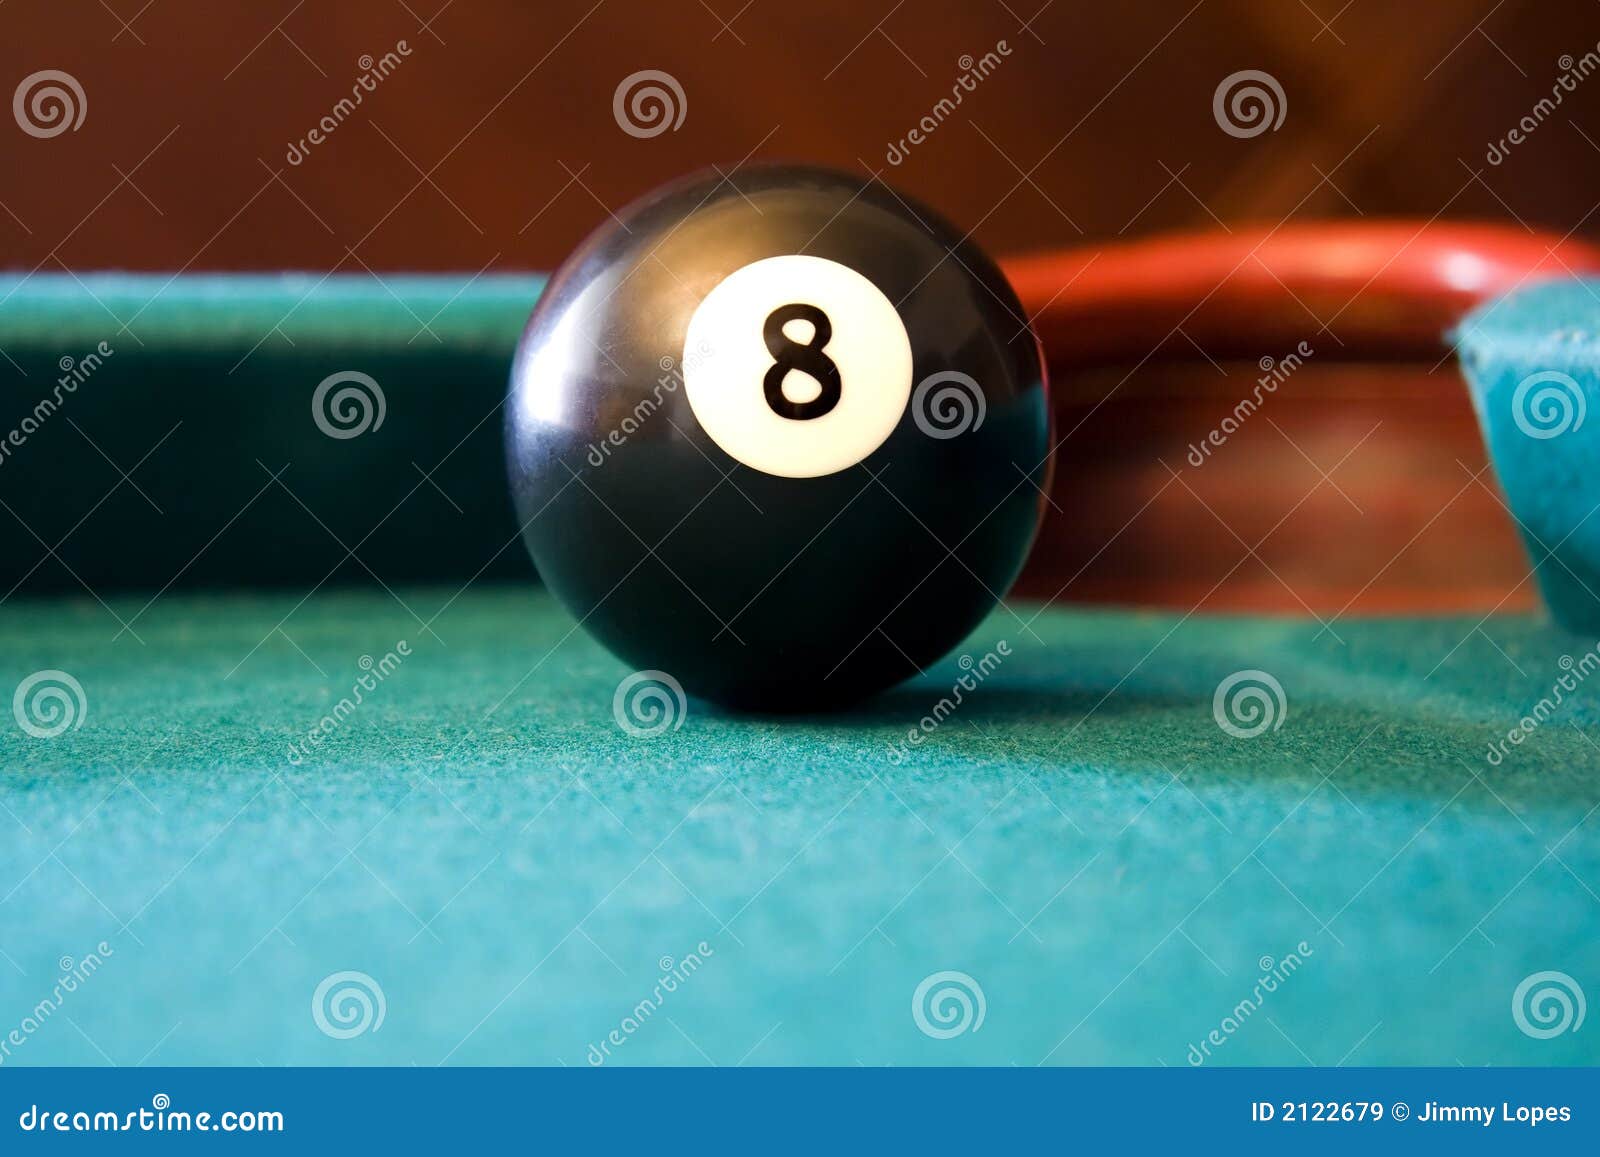 eight ball on billiards table